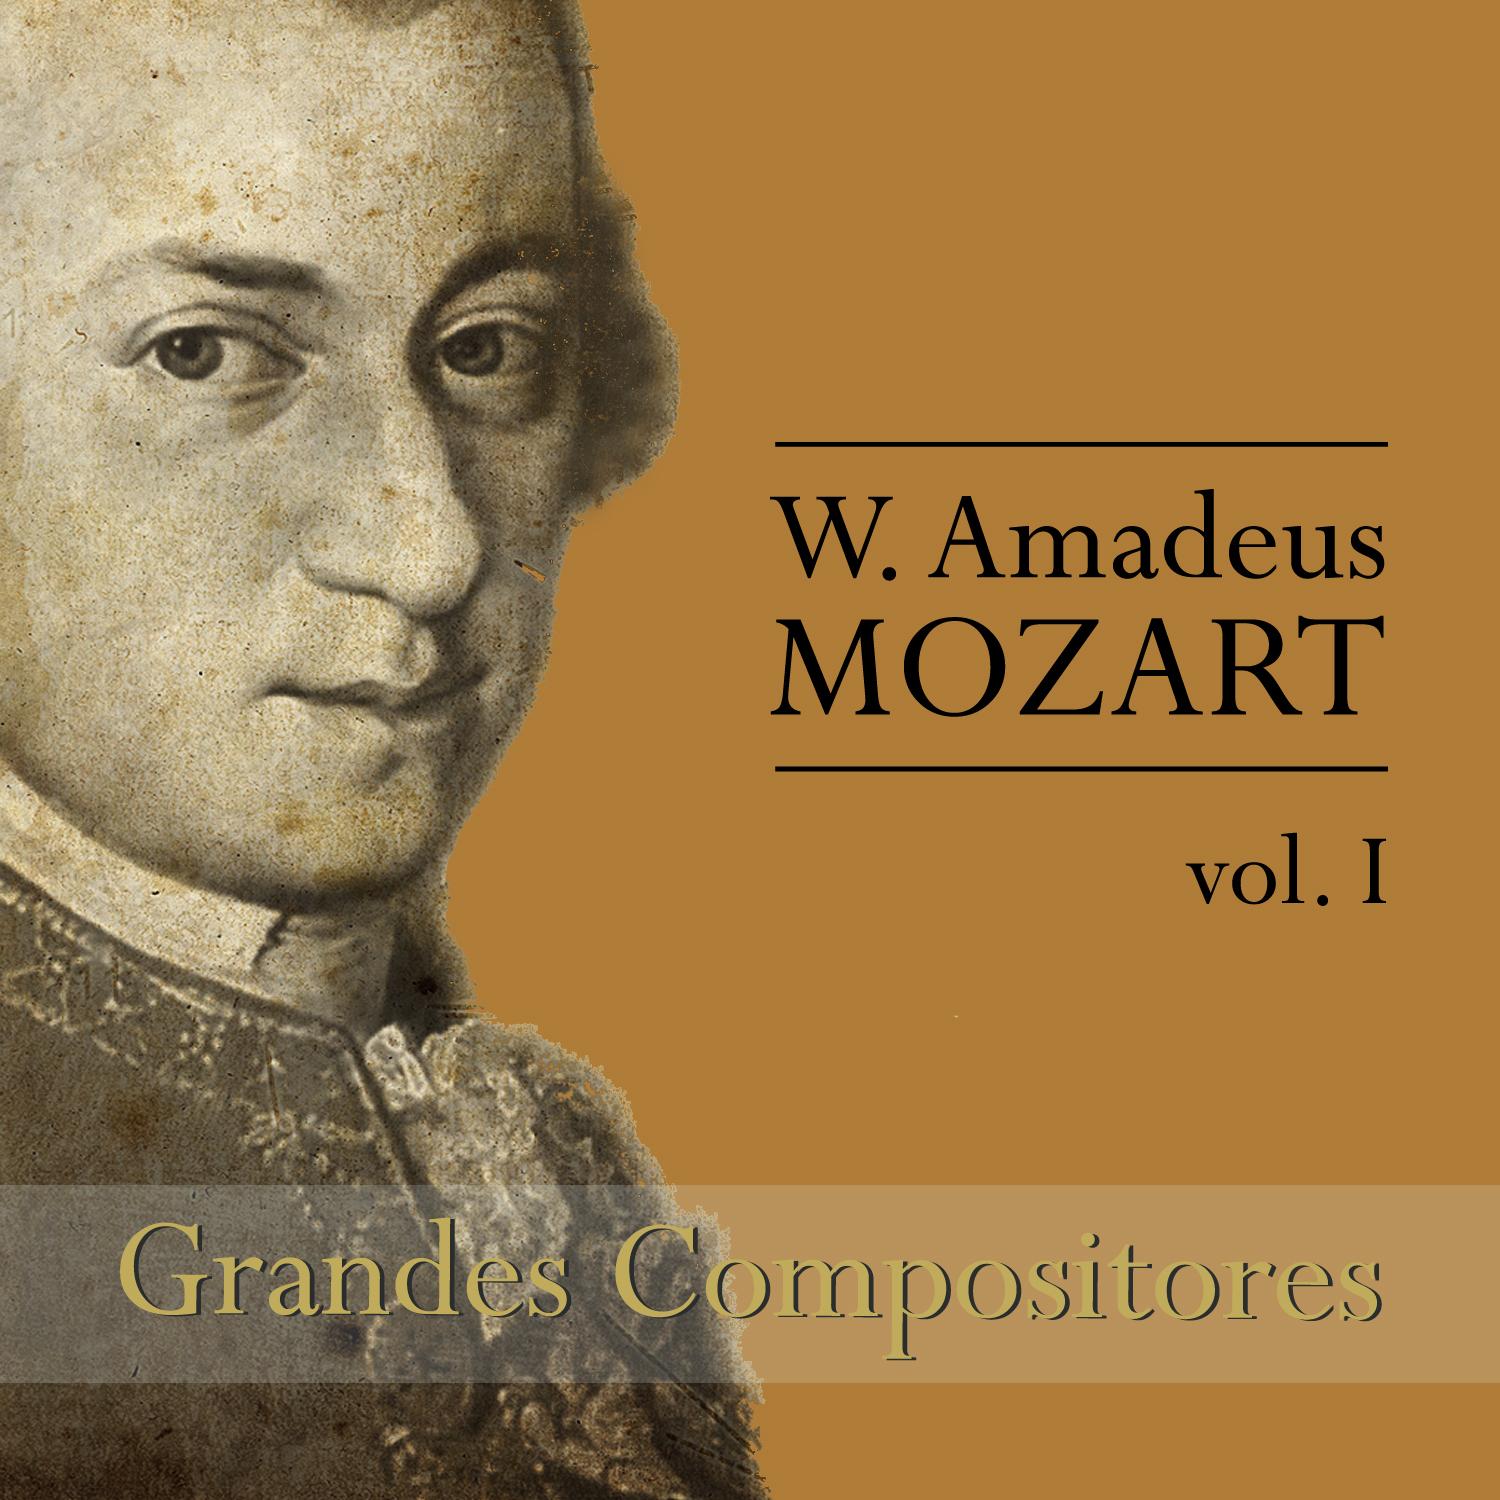 Mozart: Grandes Compositores, Vol. I